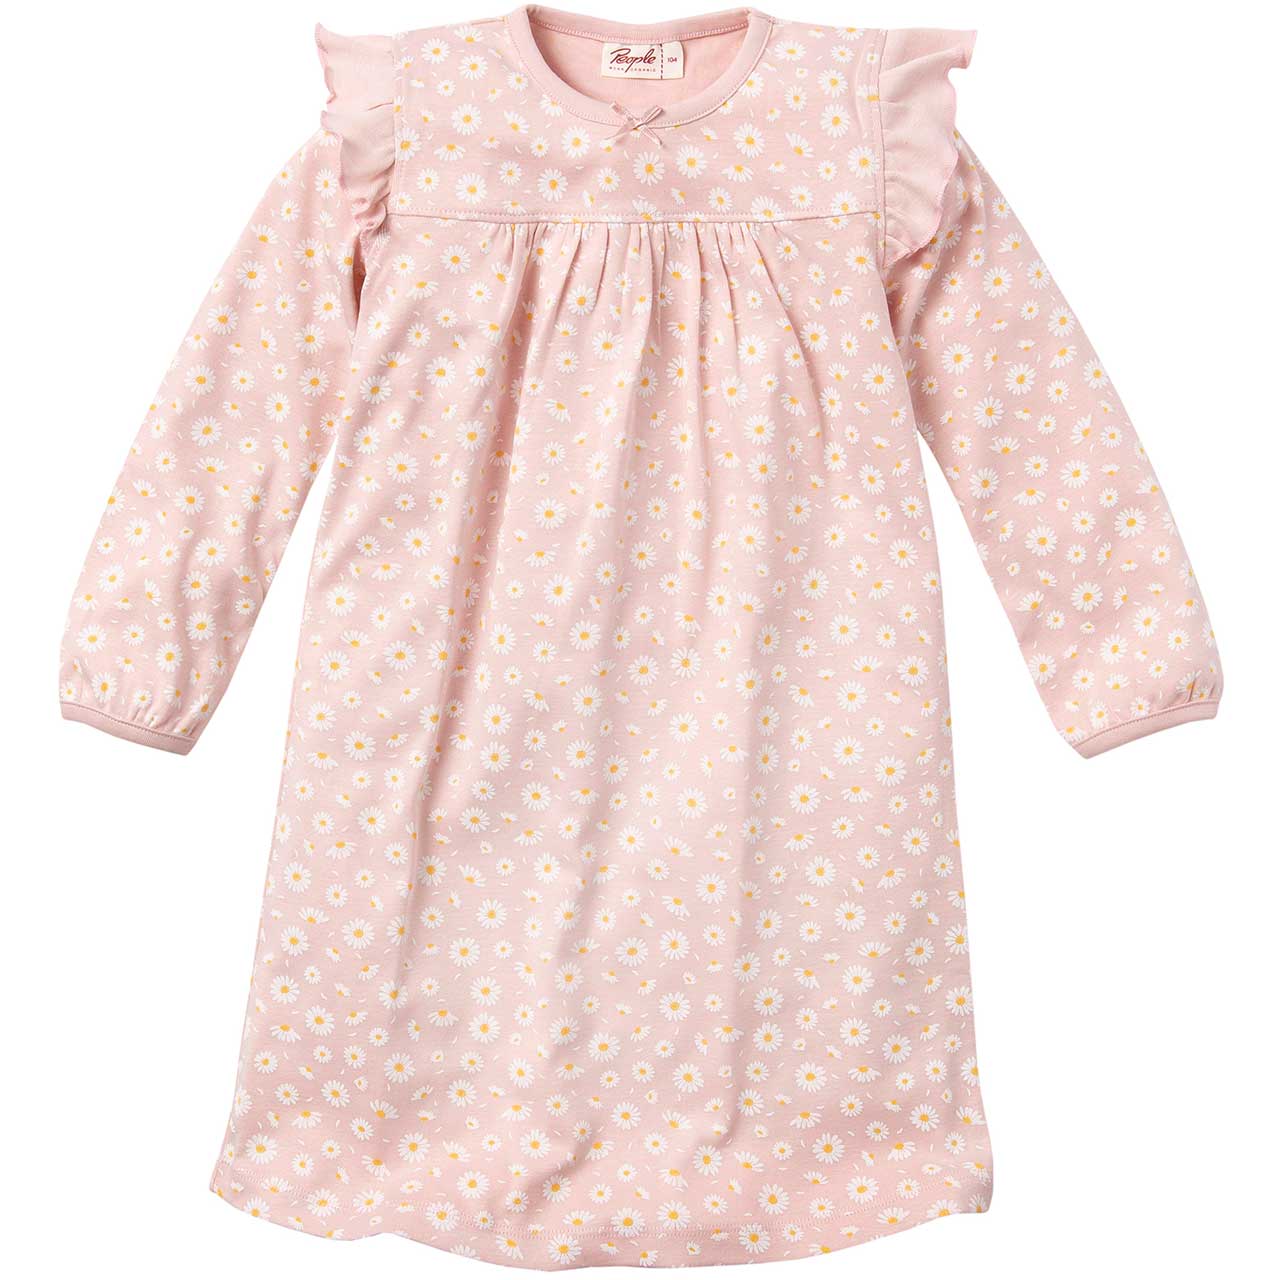 Camicia da notte Margherite per bambina in puro cotone biologico